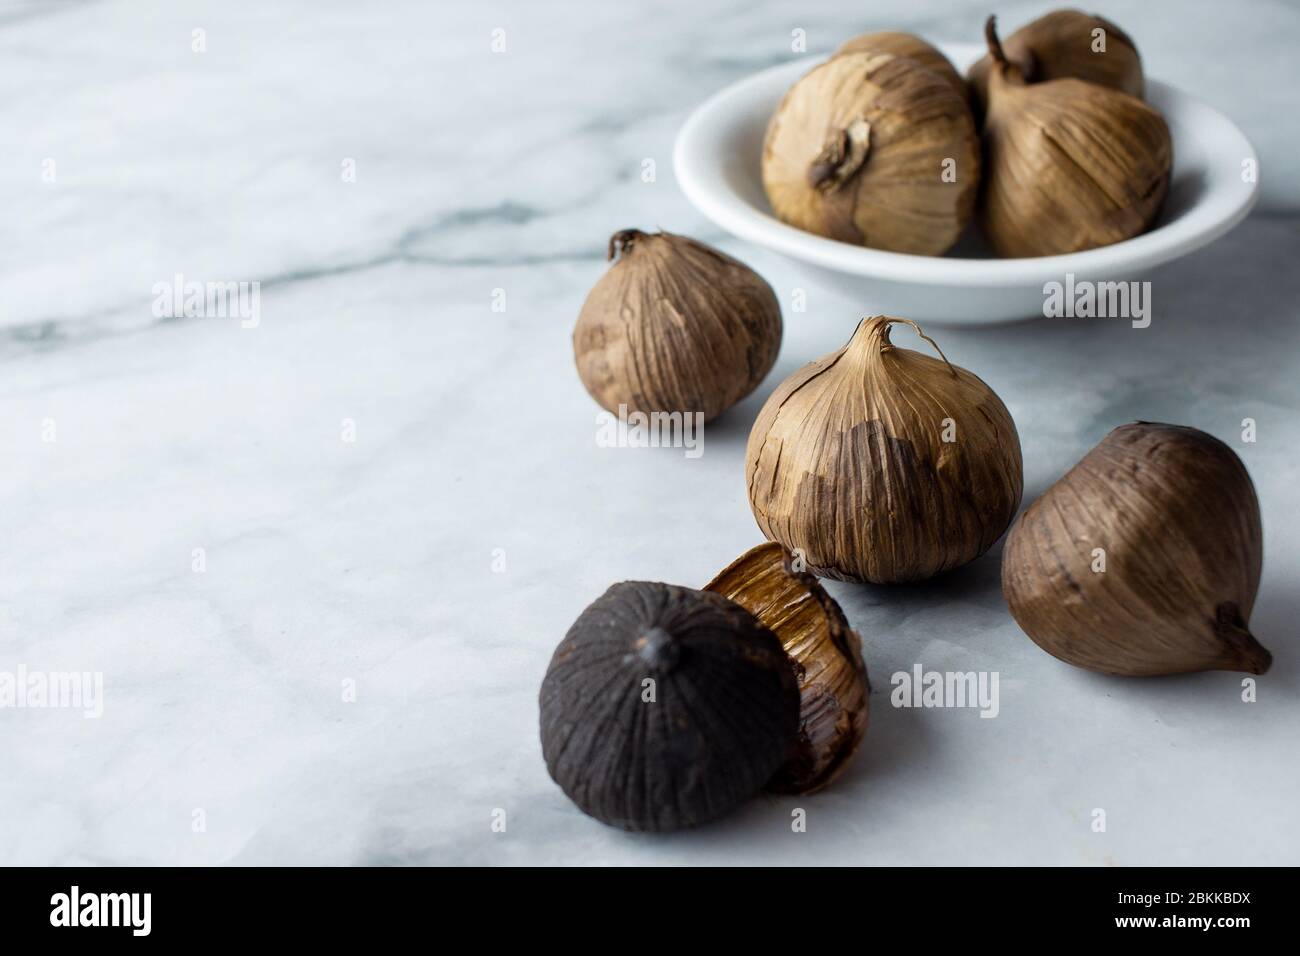 Un gruppo di aglio nero, bulbo d'aglio solo. Un ingrediente alimentare, o comunemente usato per la theraphy olistica dell'alimento. Foto Stock